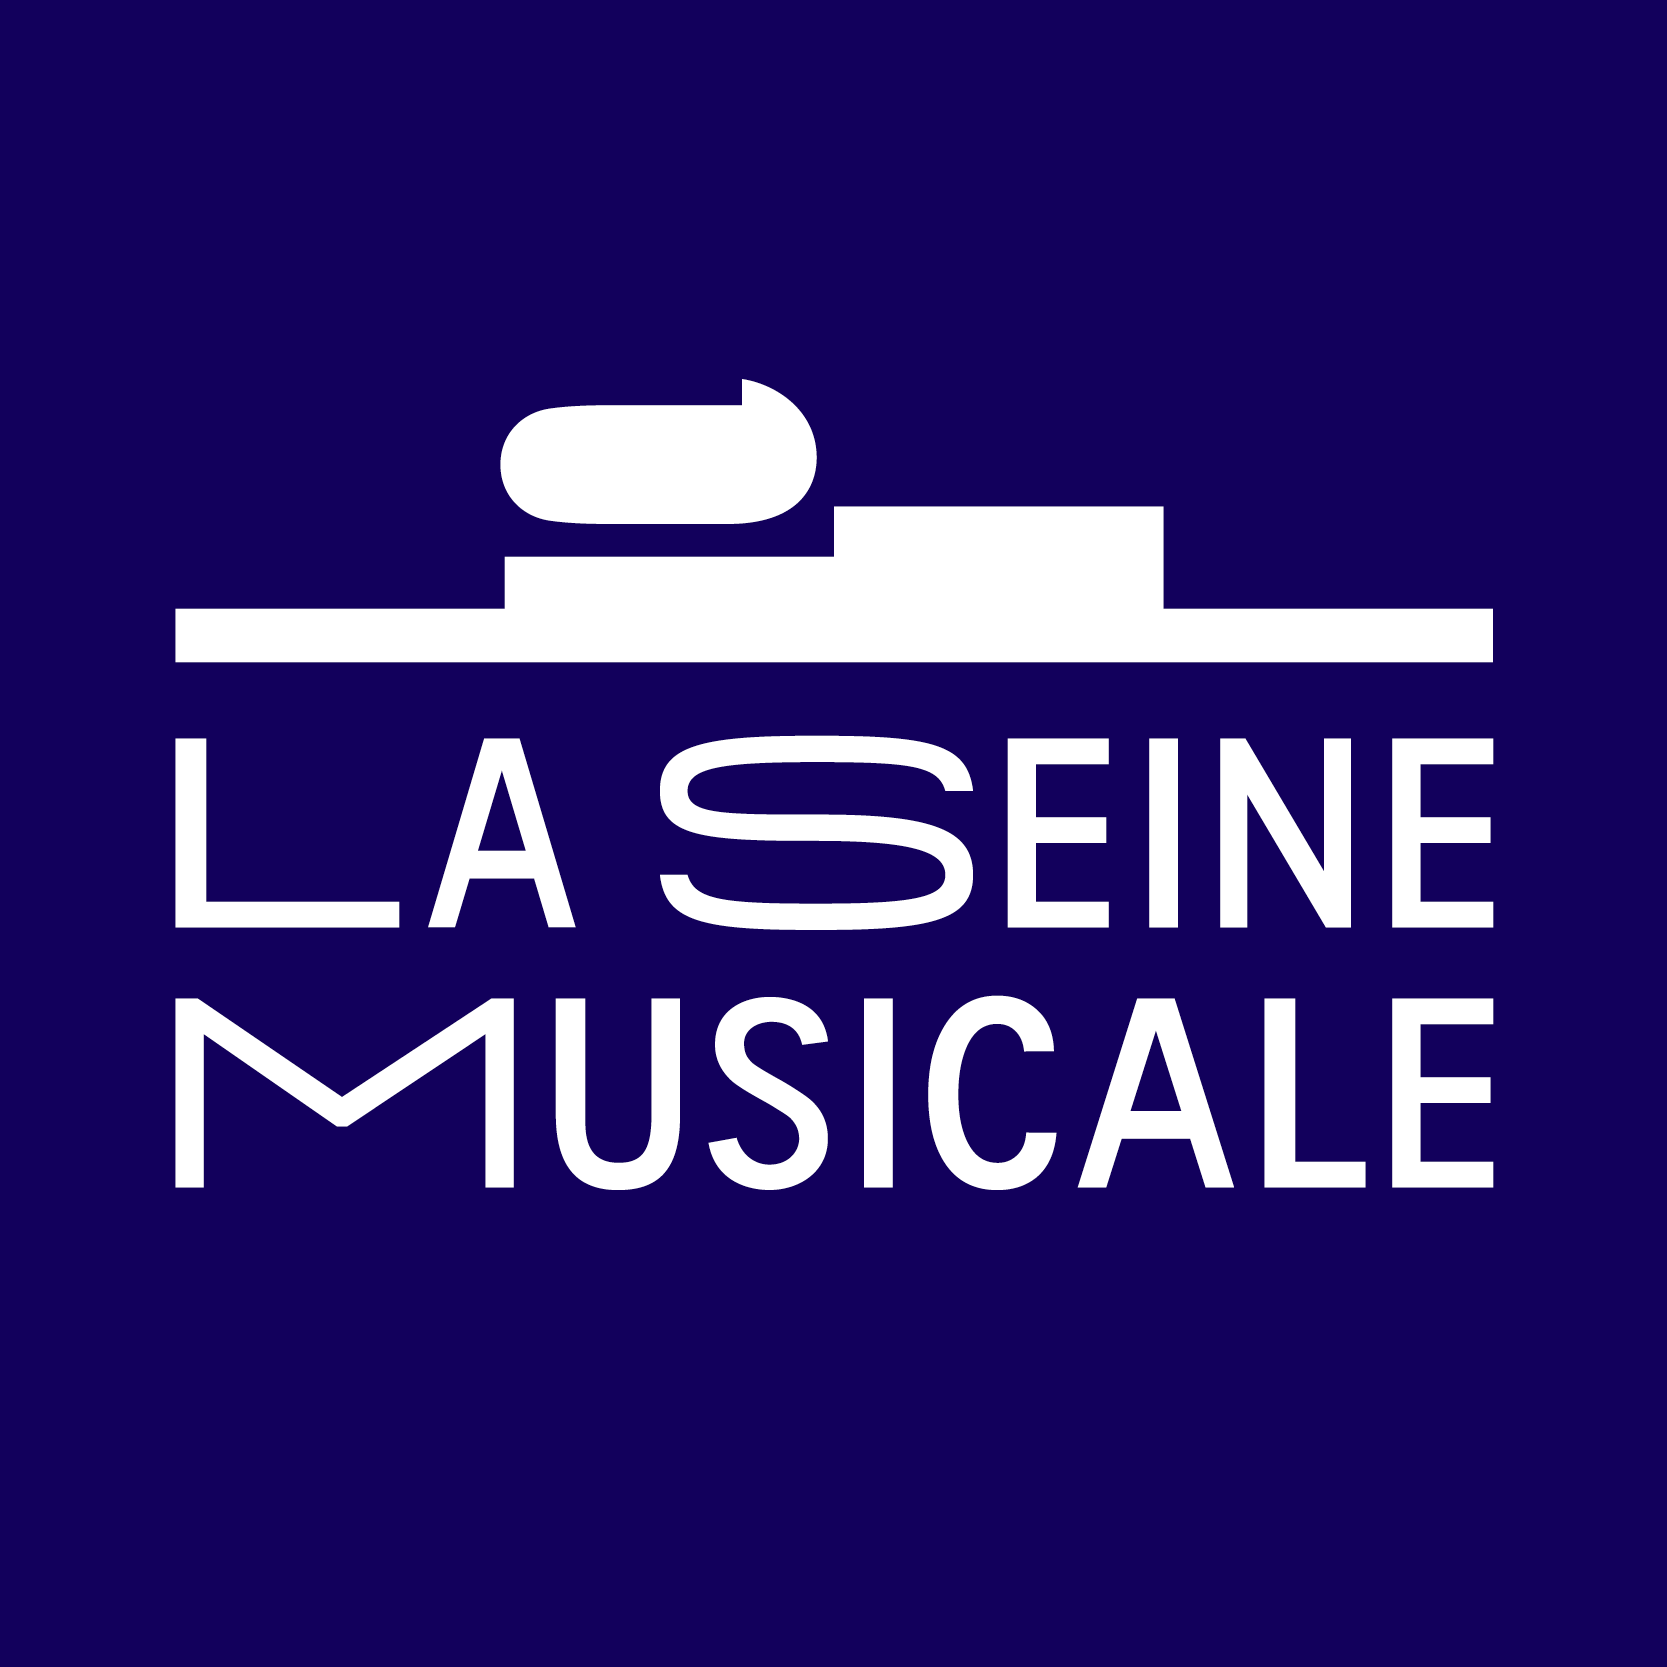 Insula Orchestra at La Seine Musicale Tickets